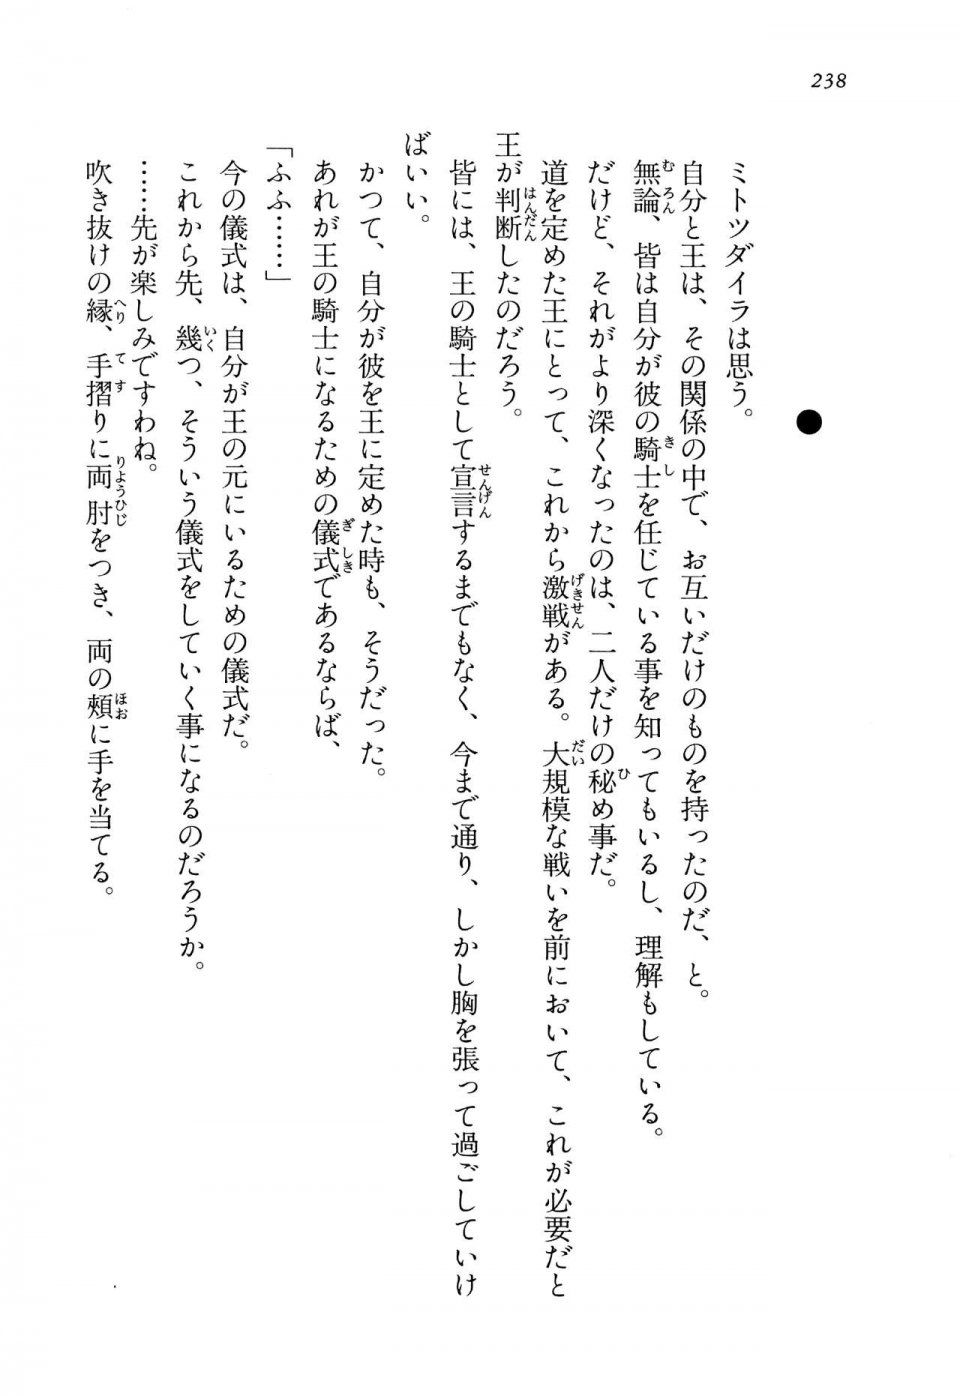 Kyoukai Senjou no Horizon LN Vol 14(6B) - Photo #238